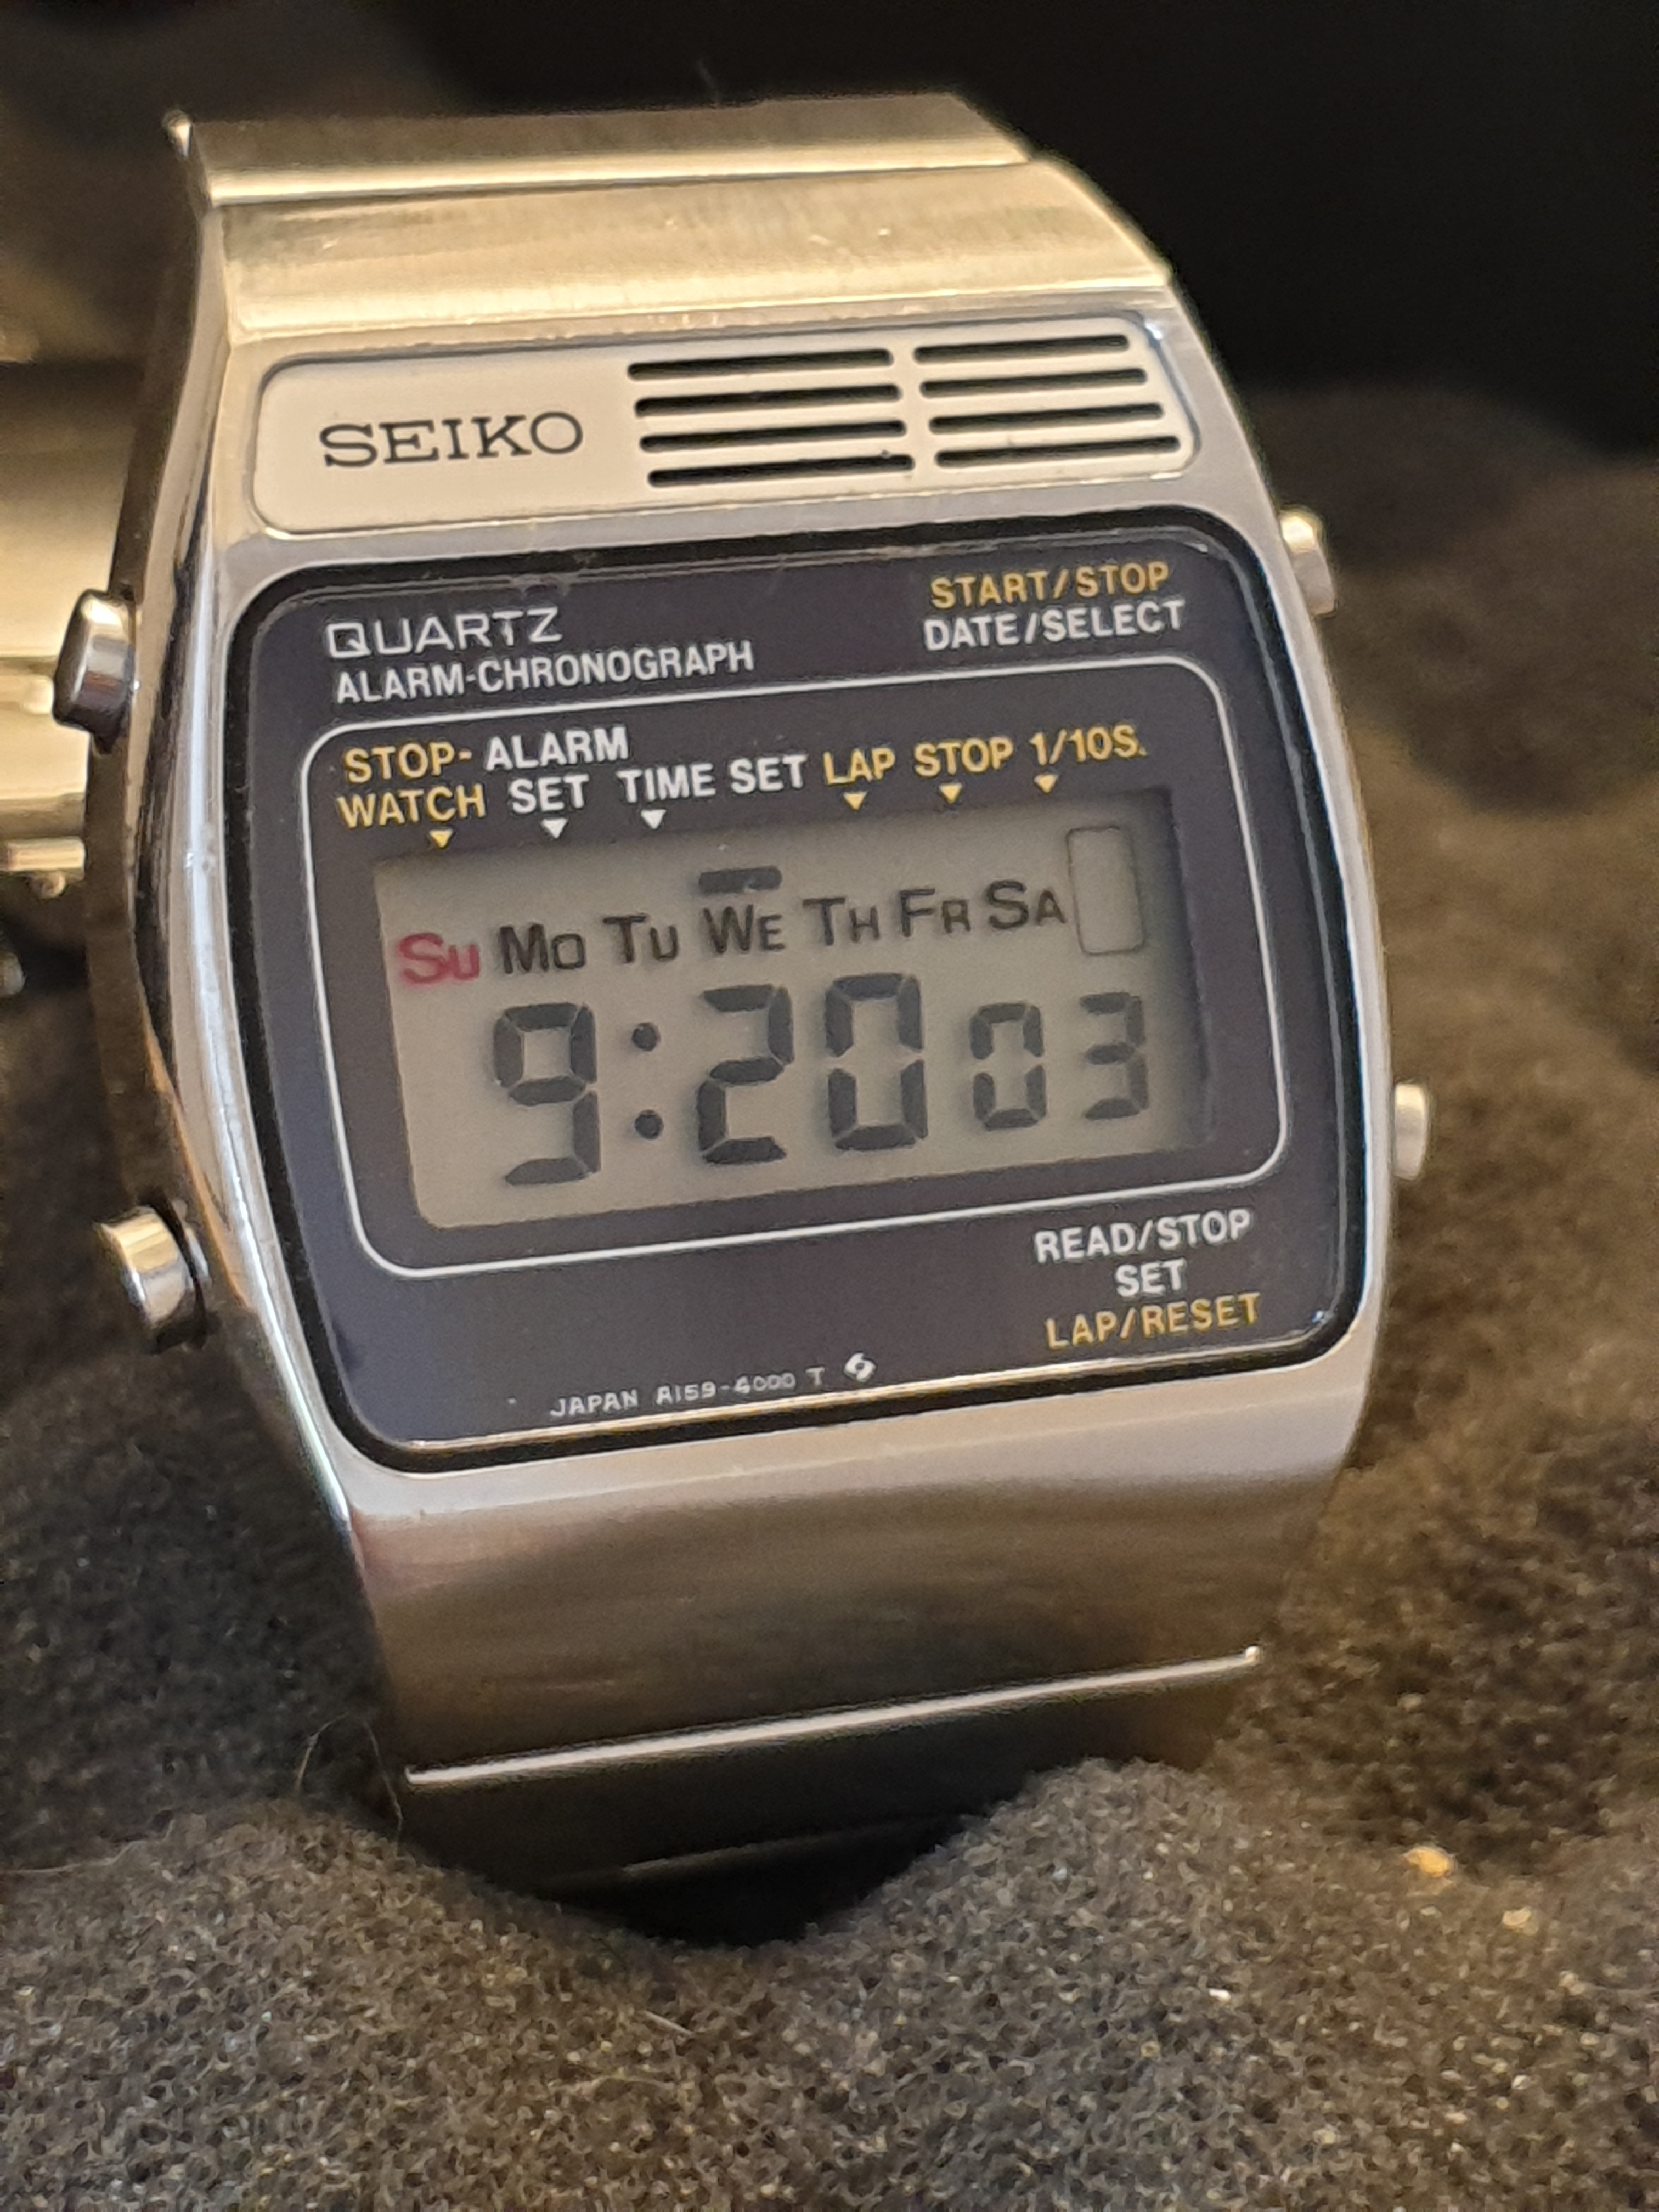 raken Het beste park Verkocht: vintage Seiko A159-4000 LCD horloge nu voor Euro 100 🙊 -  Horlogemarkt (archief) - Horlogeforum.nl - het forum voor liefhebbers van  horloges